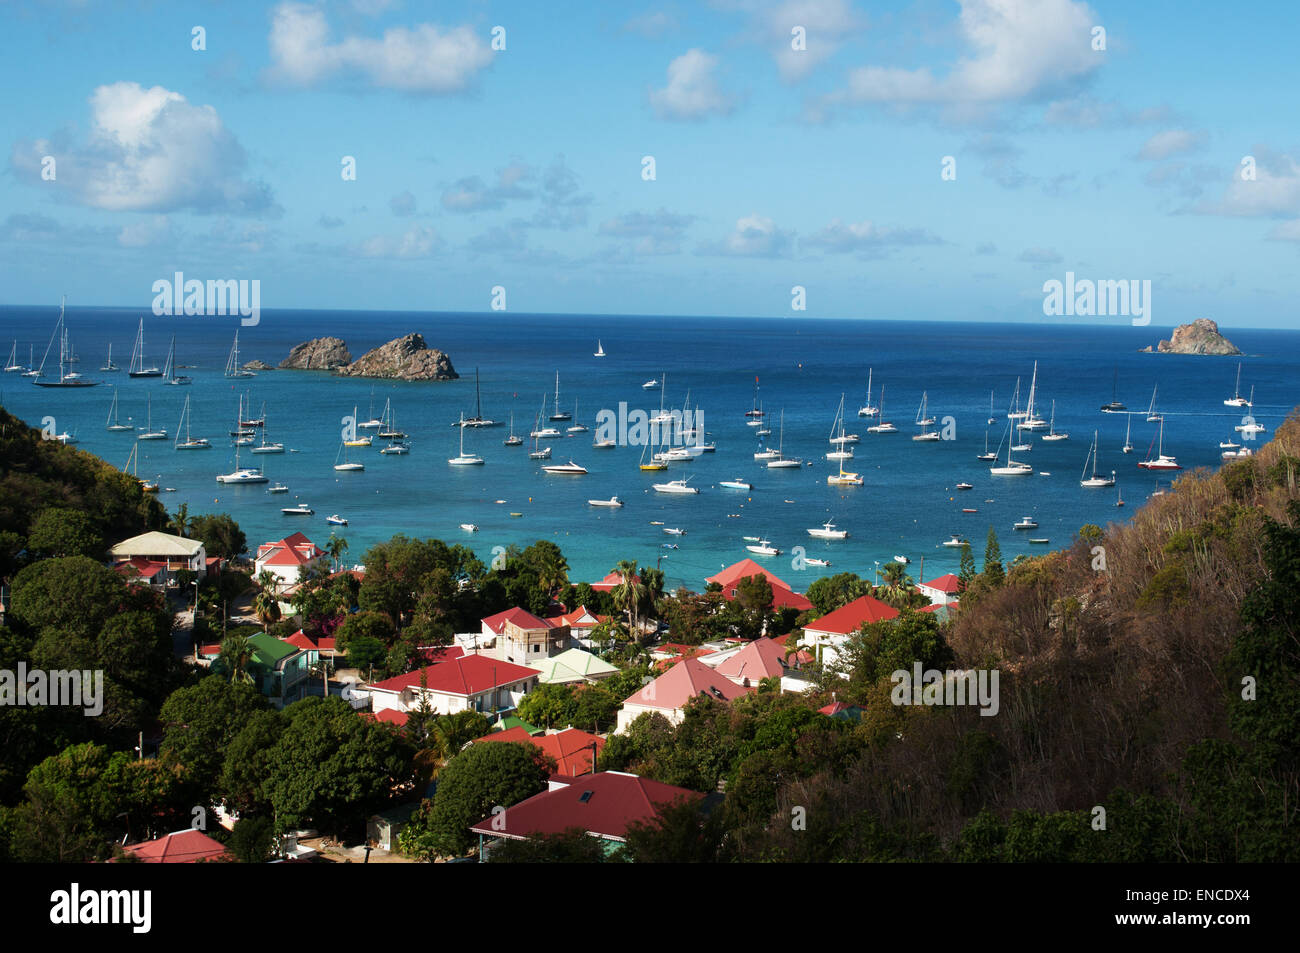 St Barth, Saint-barth, Saint-Barthélemy : la mer des Caraïbes avec les voiliers dans le port de Gustavia vu depuis le village de Corossol Banque D'Images